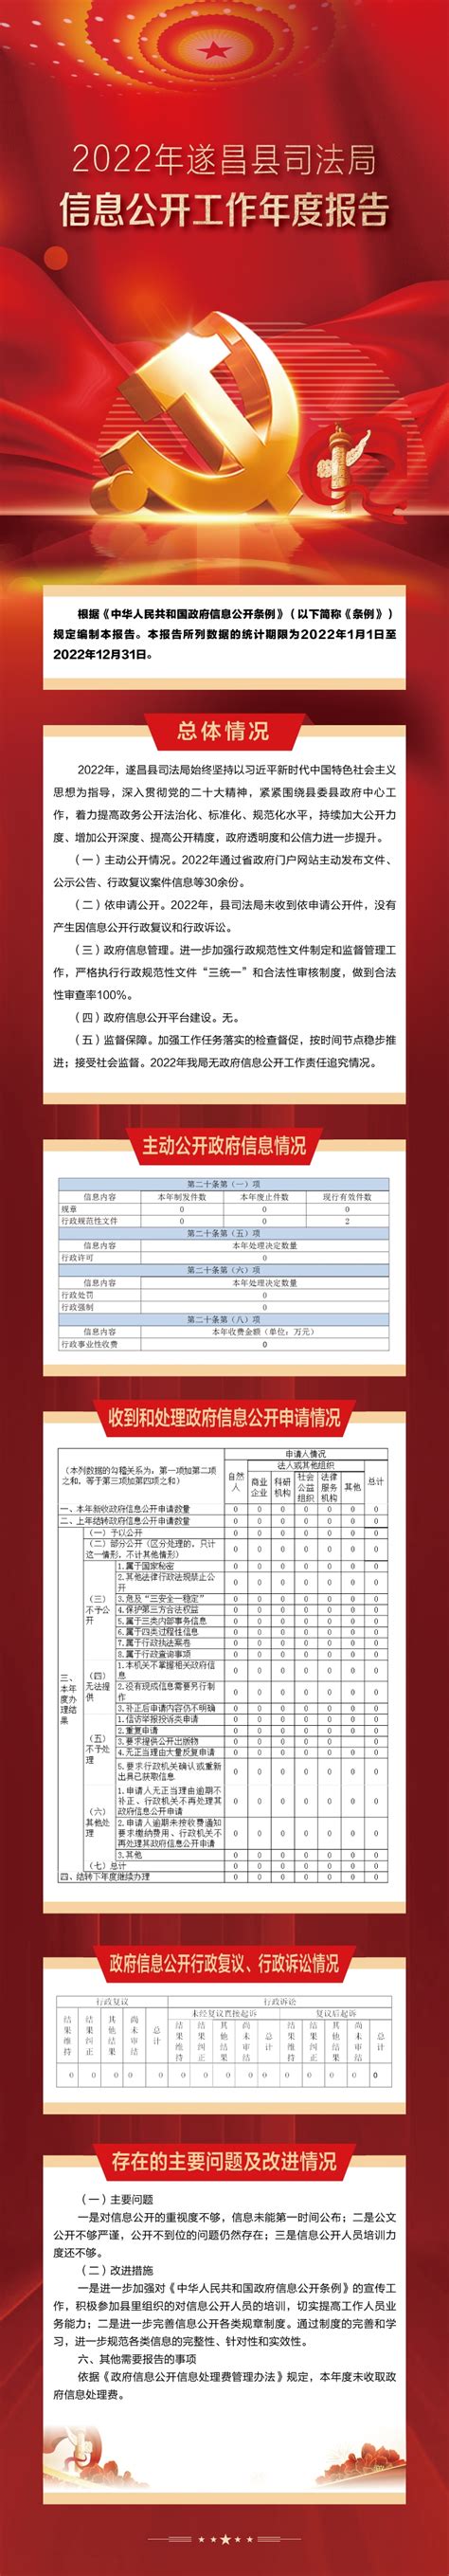 2022年遂昌县司法局信息公开工作年度报告（图解）